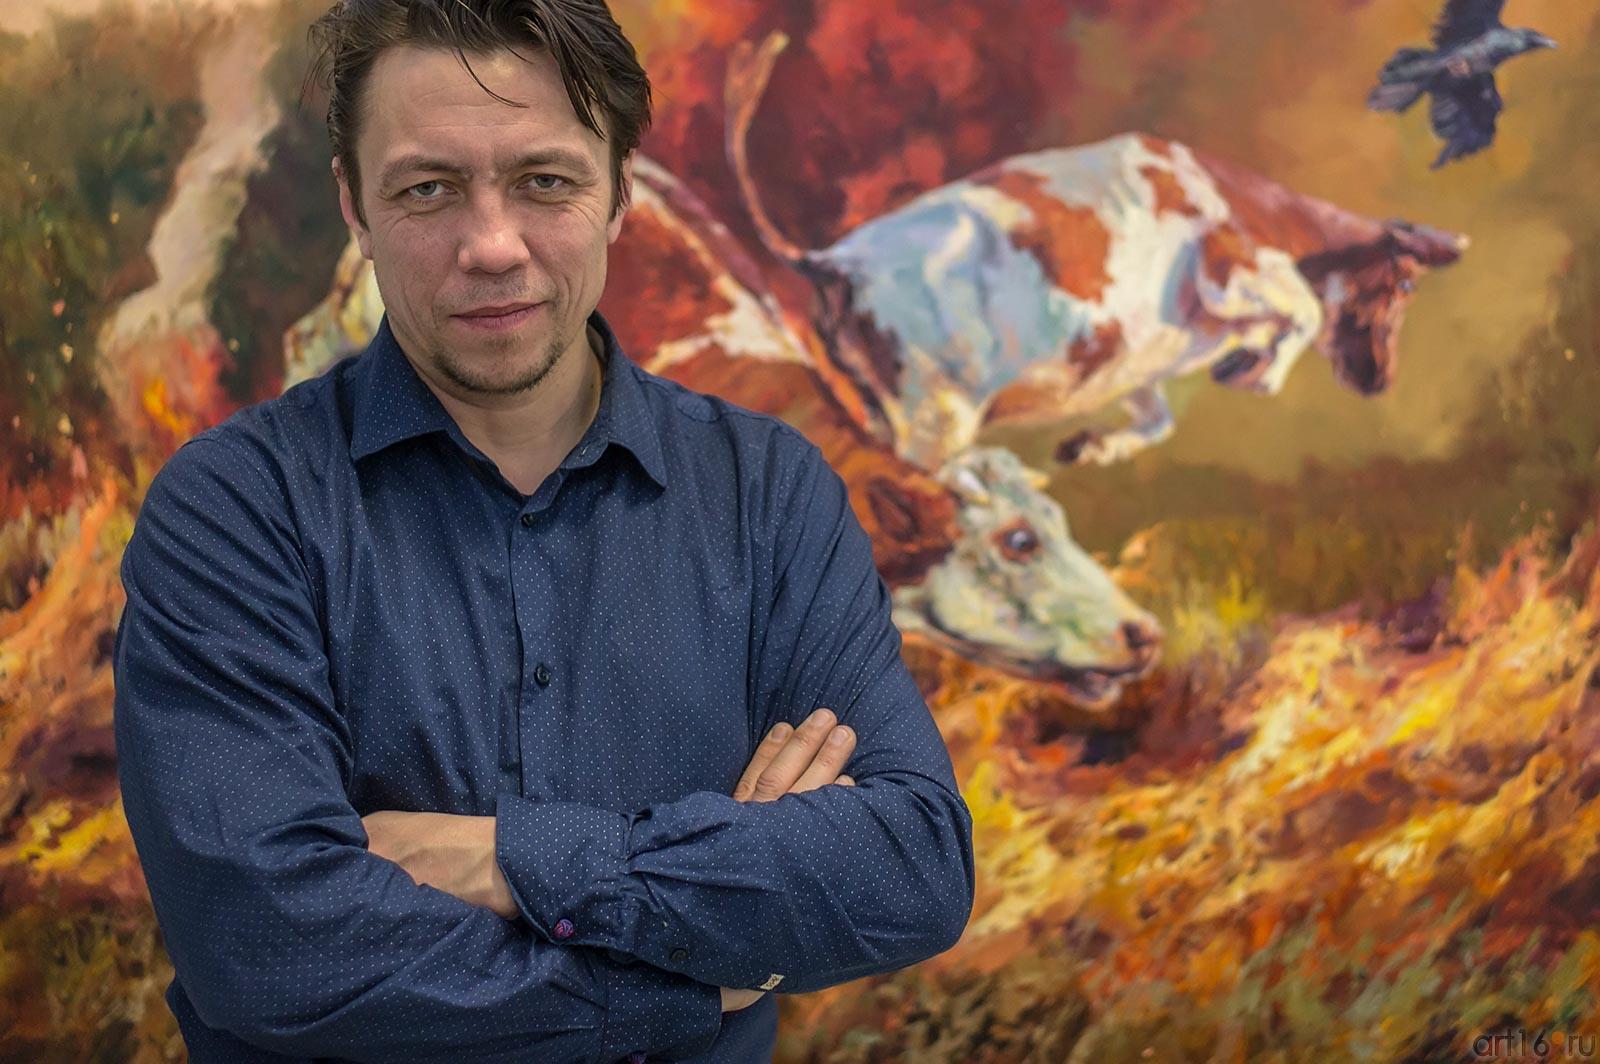 Ирек Мусин::Арт-галерея 2013, на Казанской ярмарке ( ч.2)